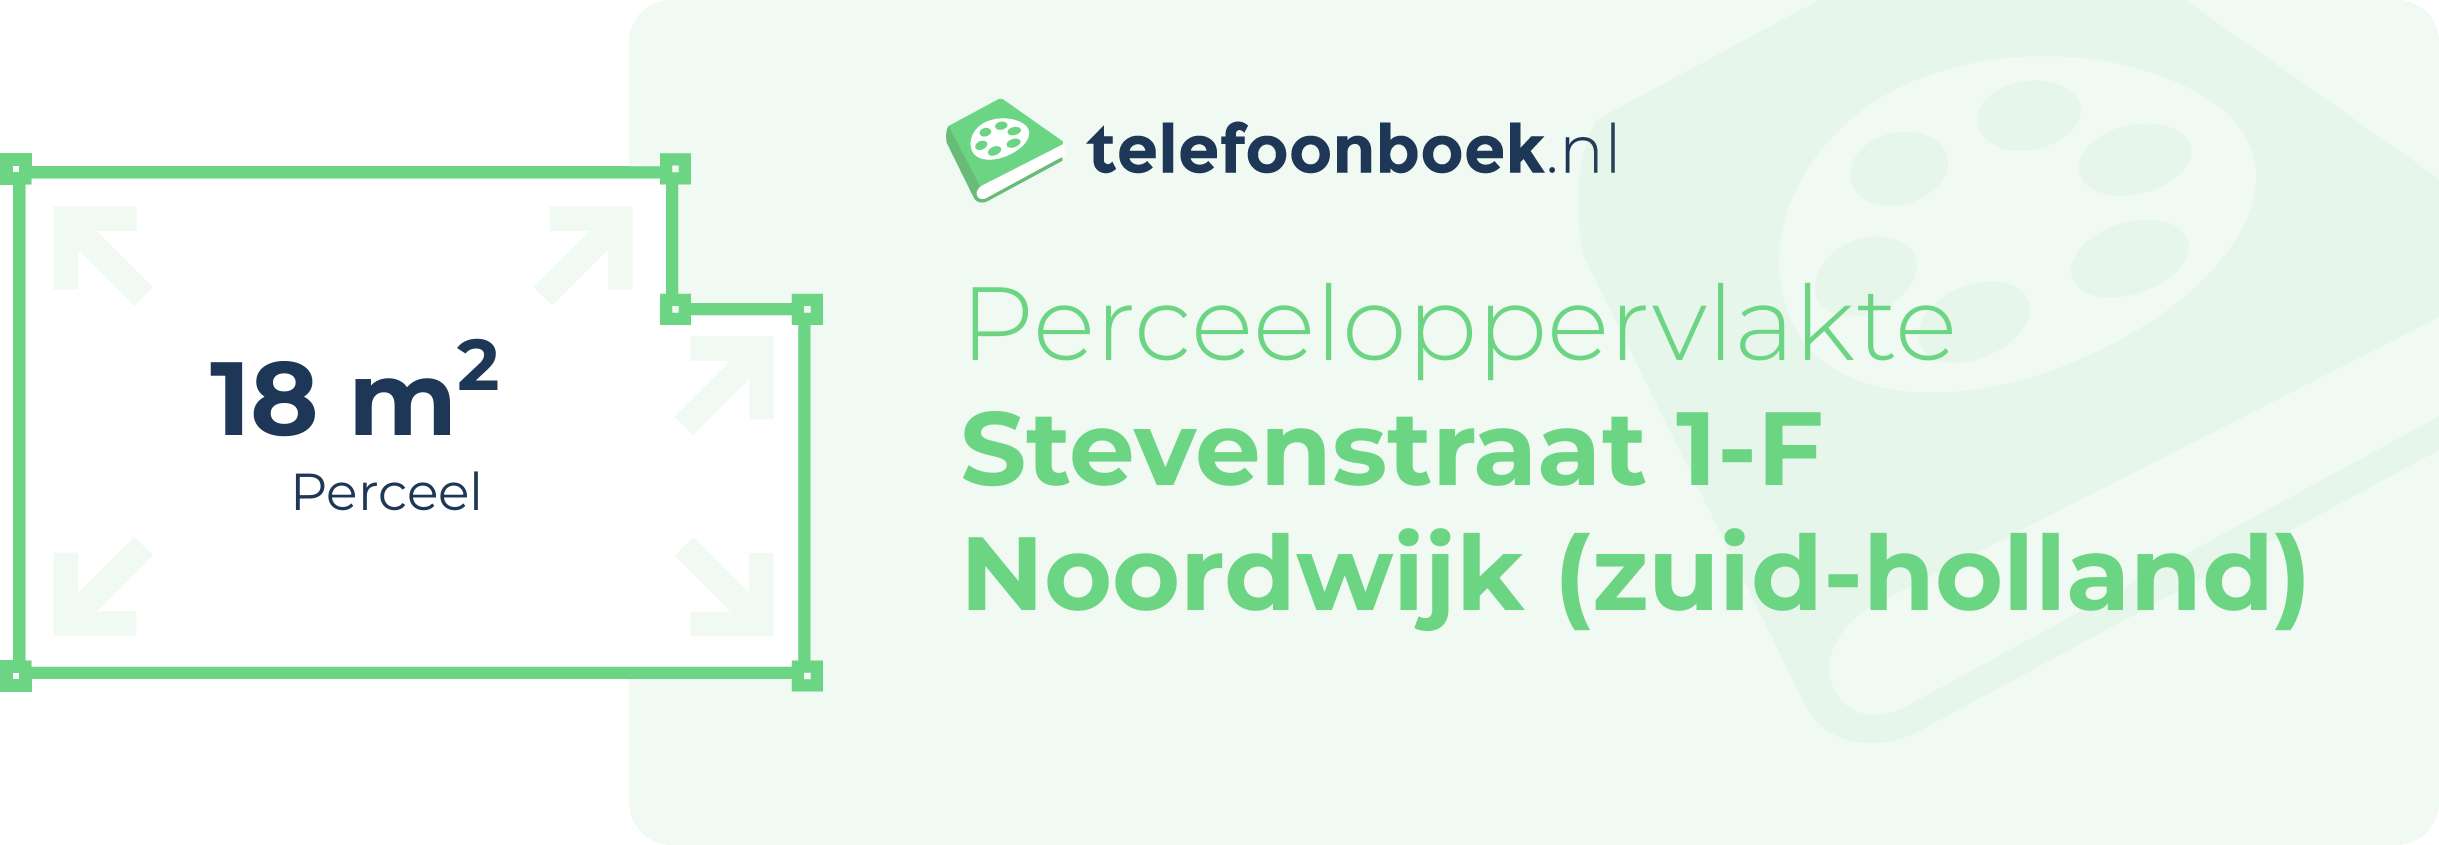 Perceeloppervlakte Stevenstraat 1-F Noordwijk (Zuid-Holland)